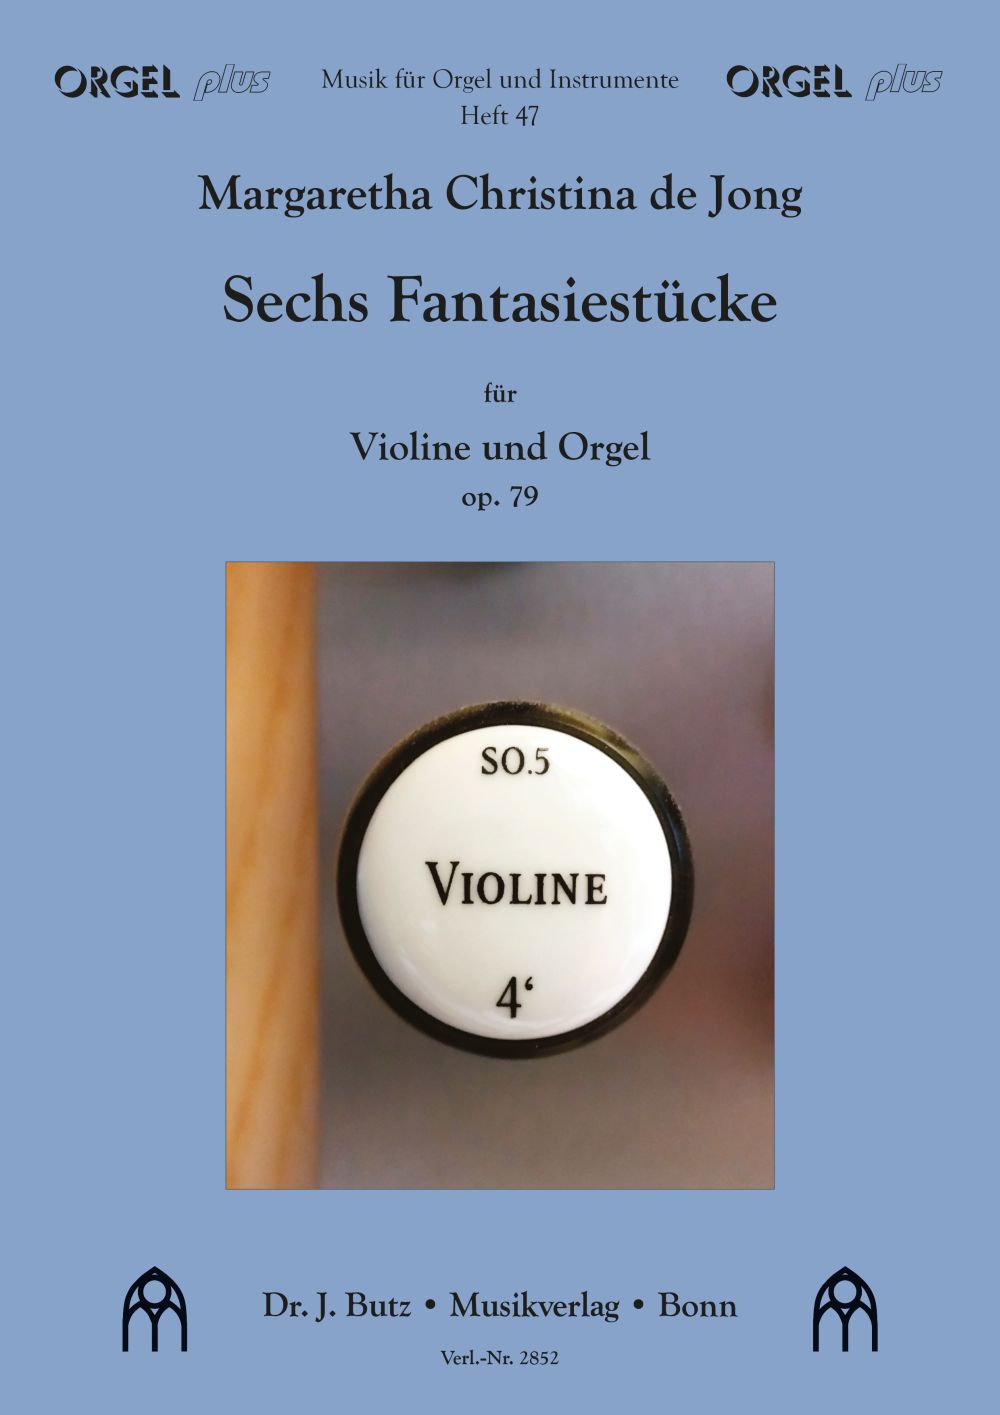 Sechs Fantasiestücke für Violine und Orgel opus 79